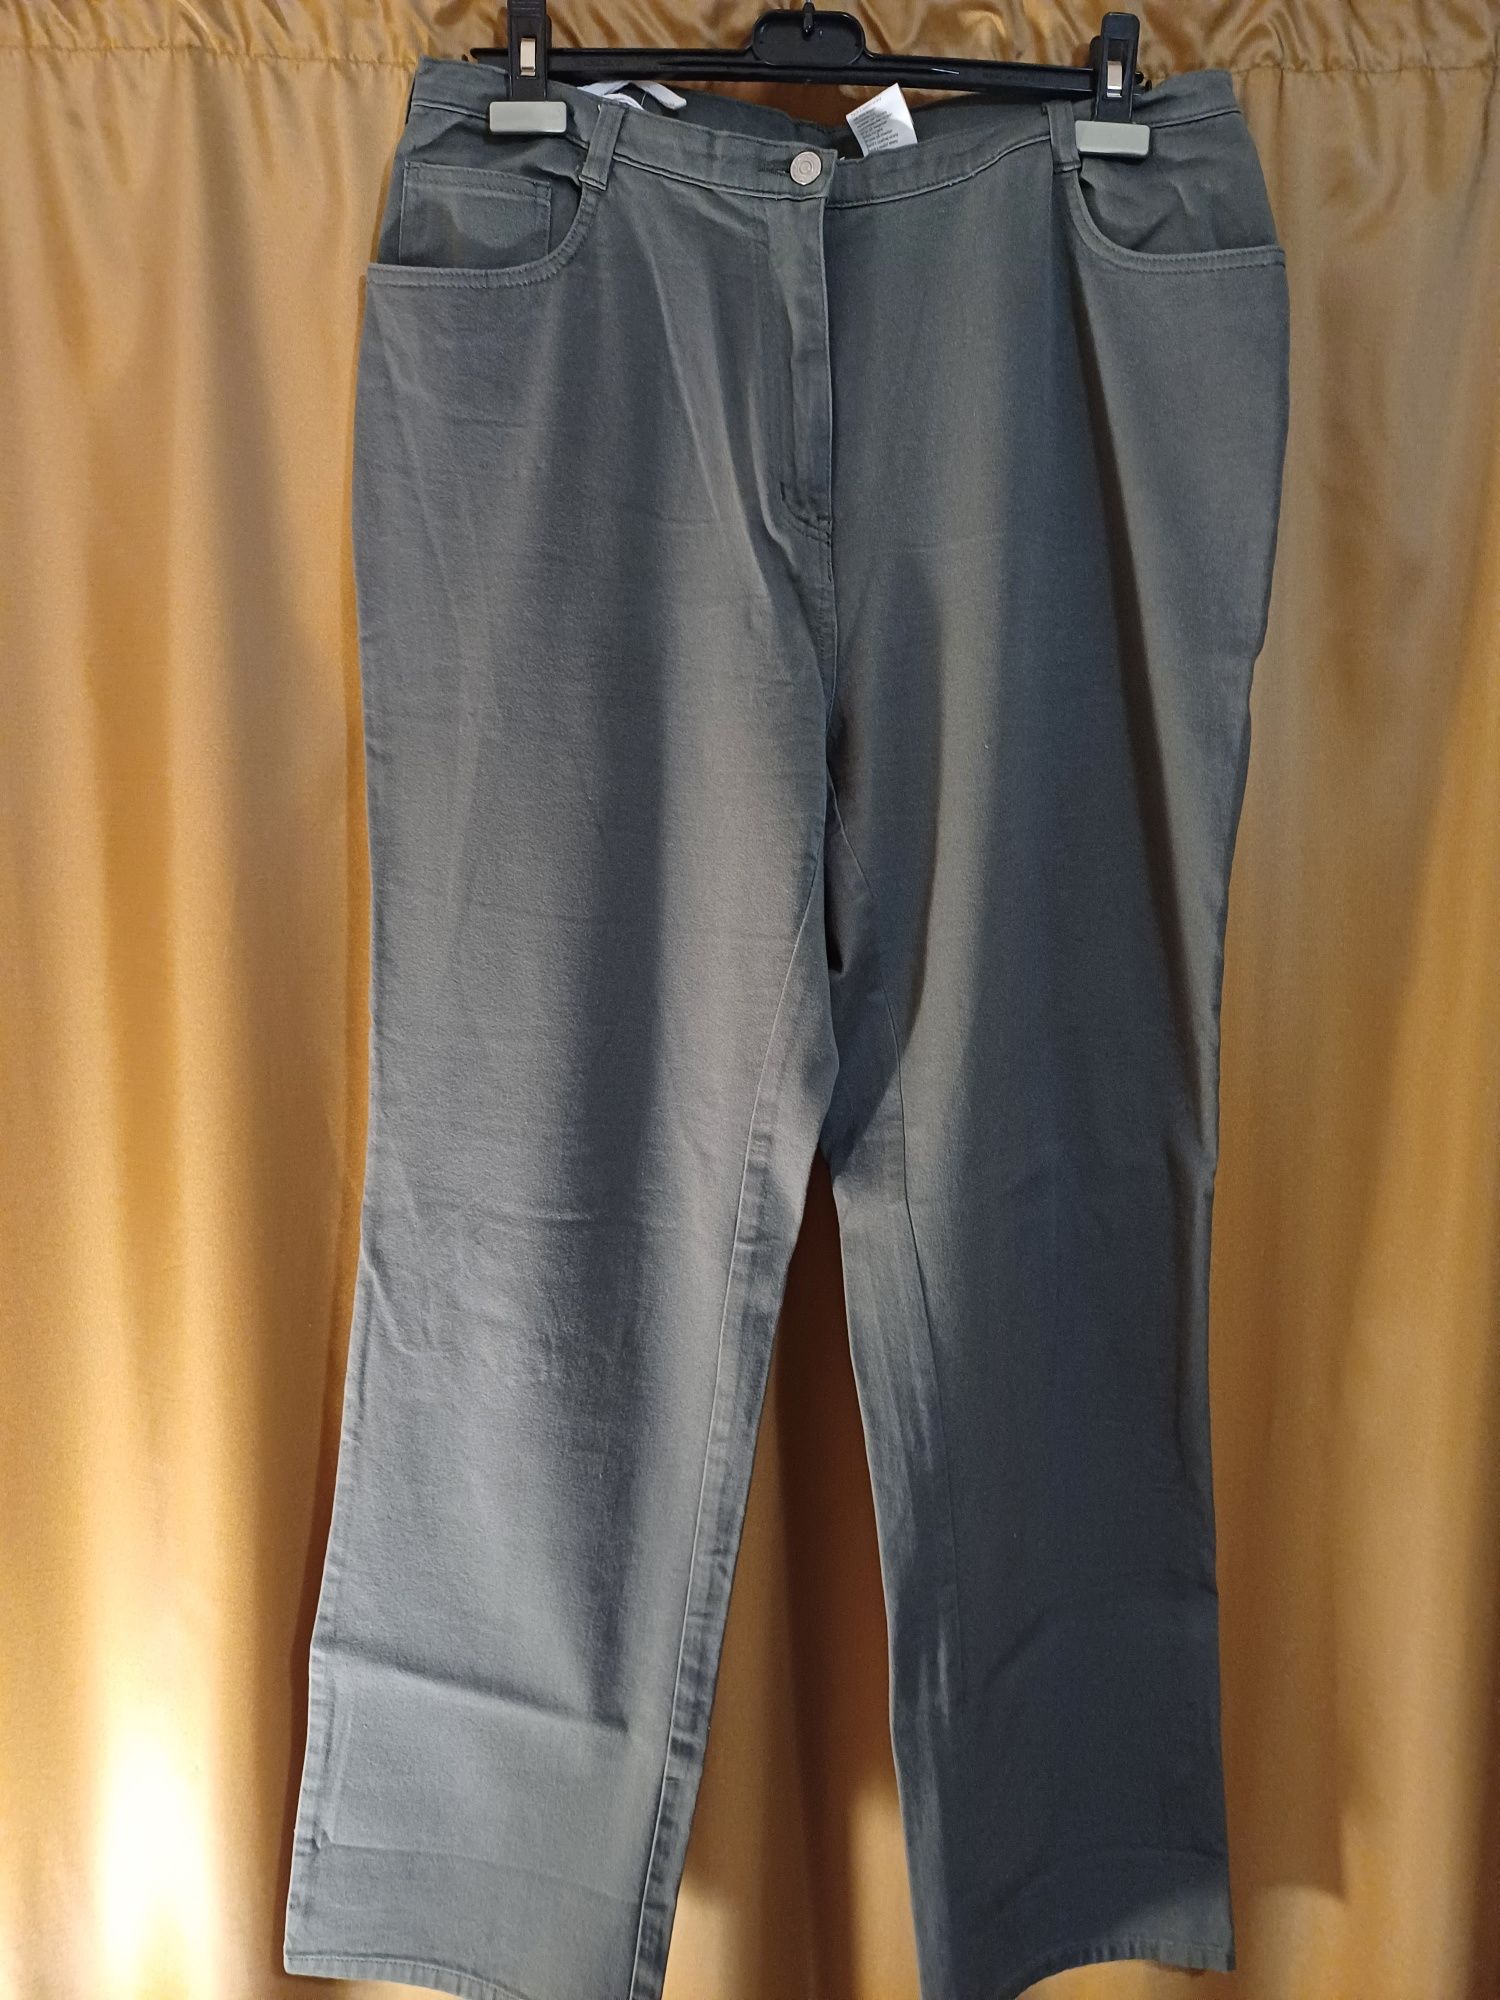 Pantaloni NOI 46,XL